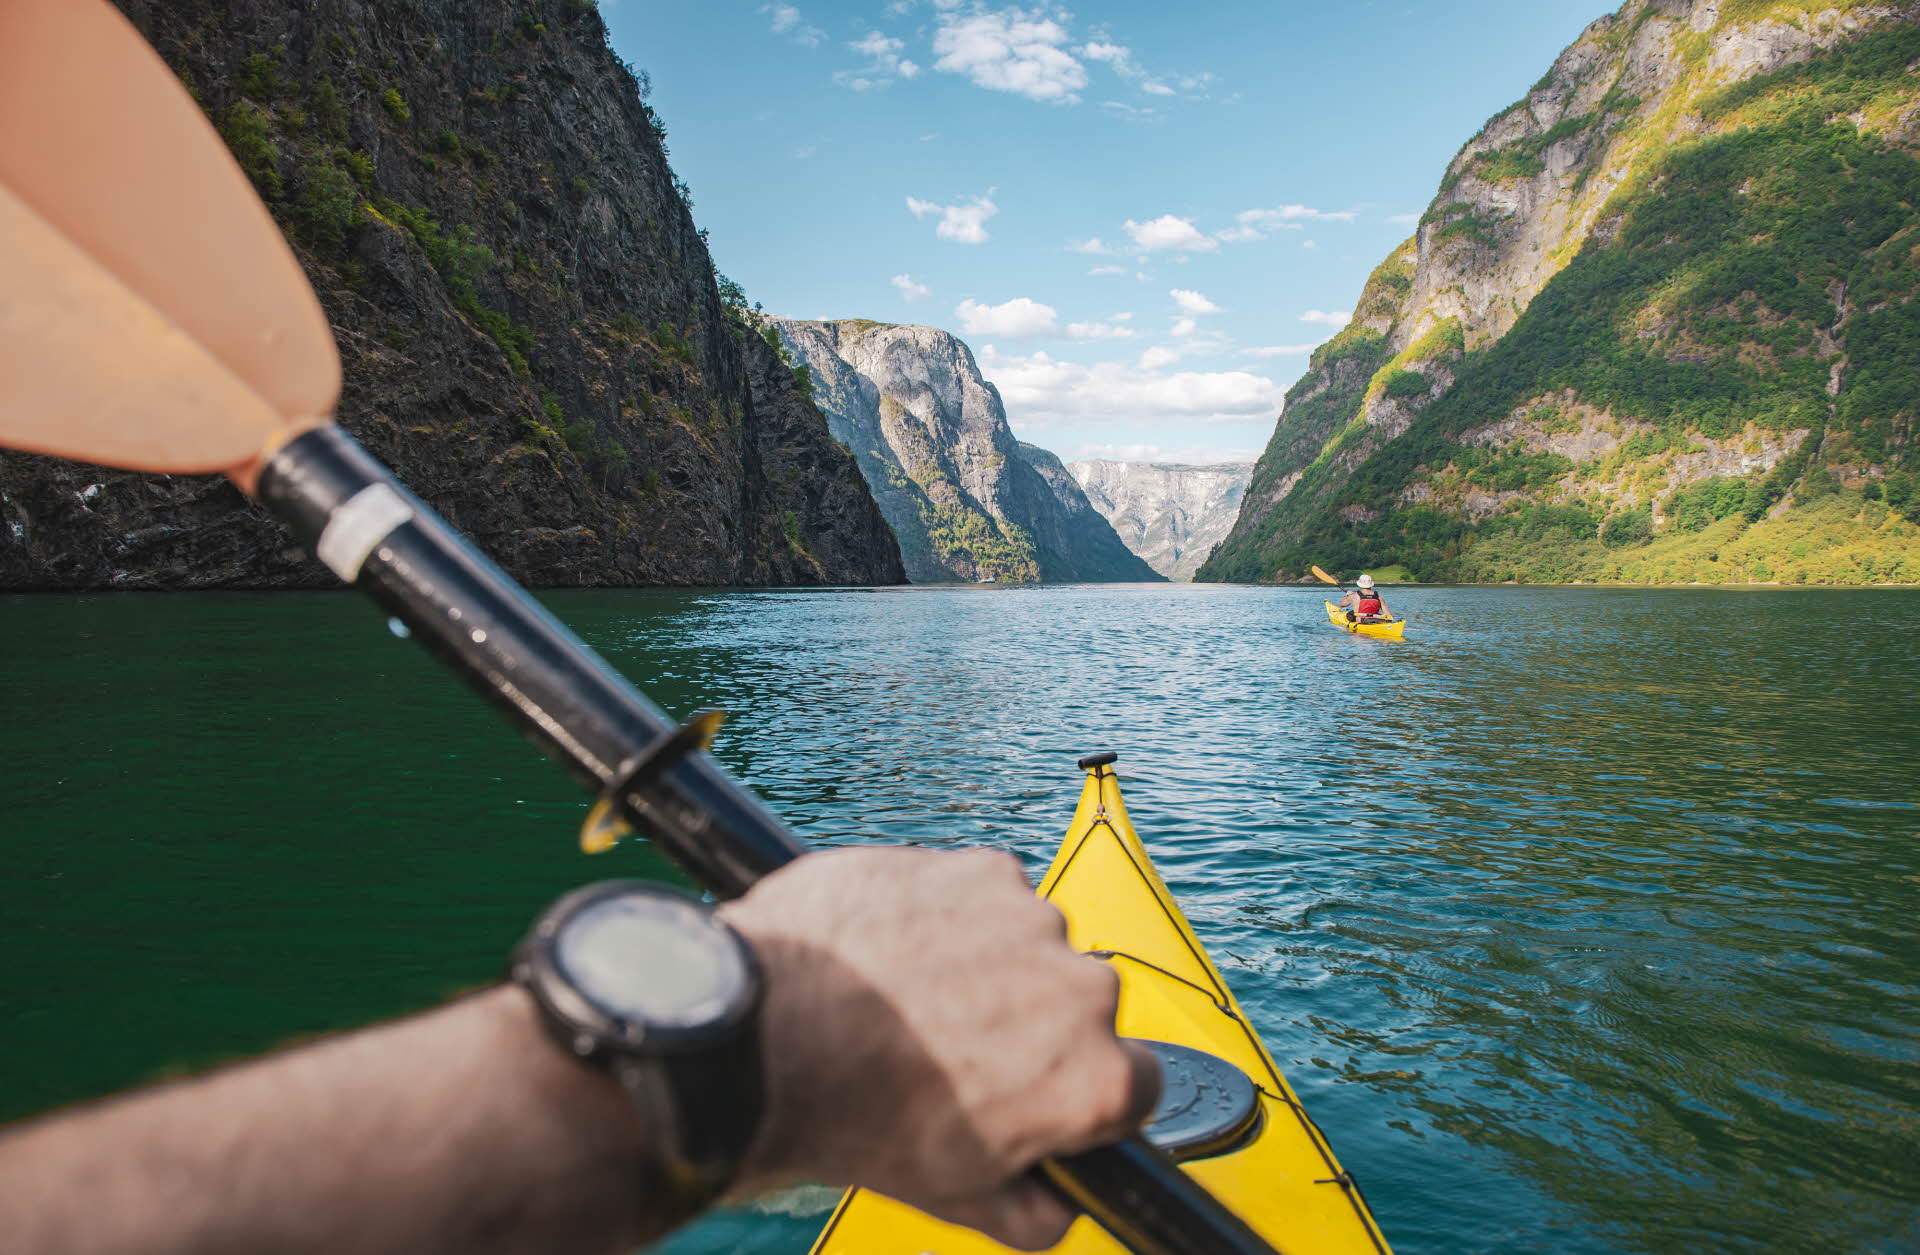 Una mano sosteniendo un remo en un kayak amarillo. En primer plano, otro kayakista, el Nærøyfjord y las montañas.